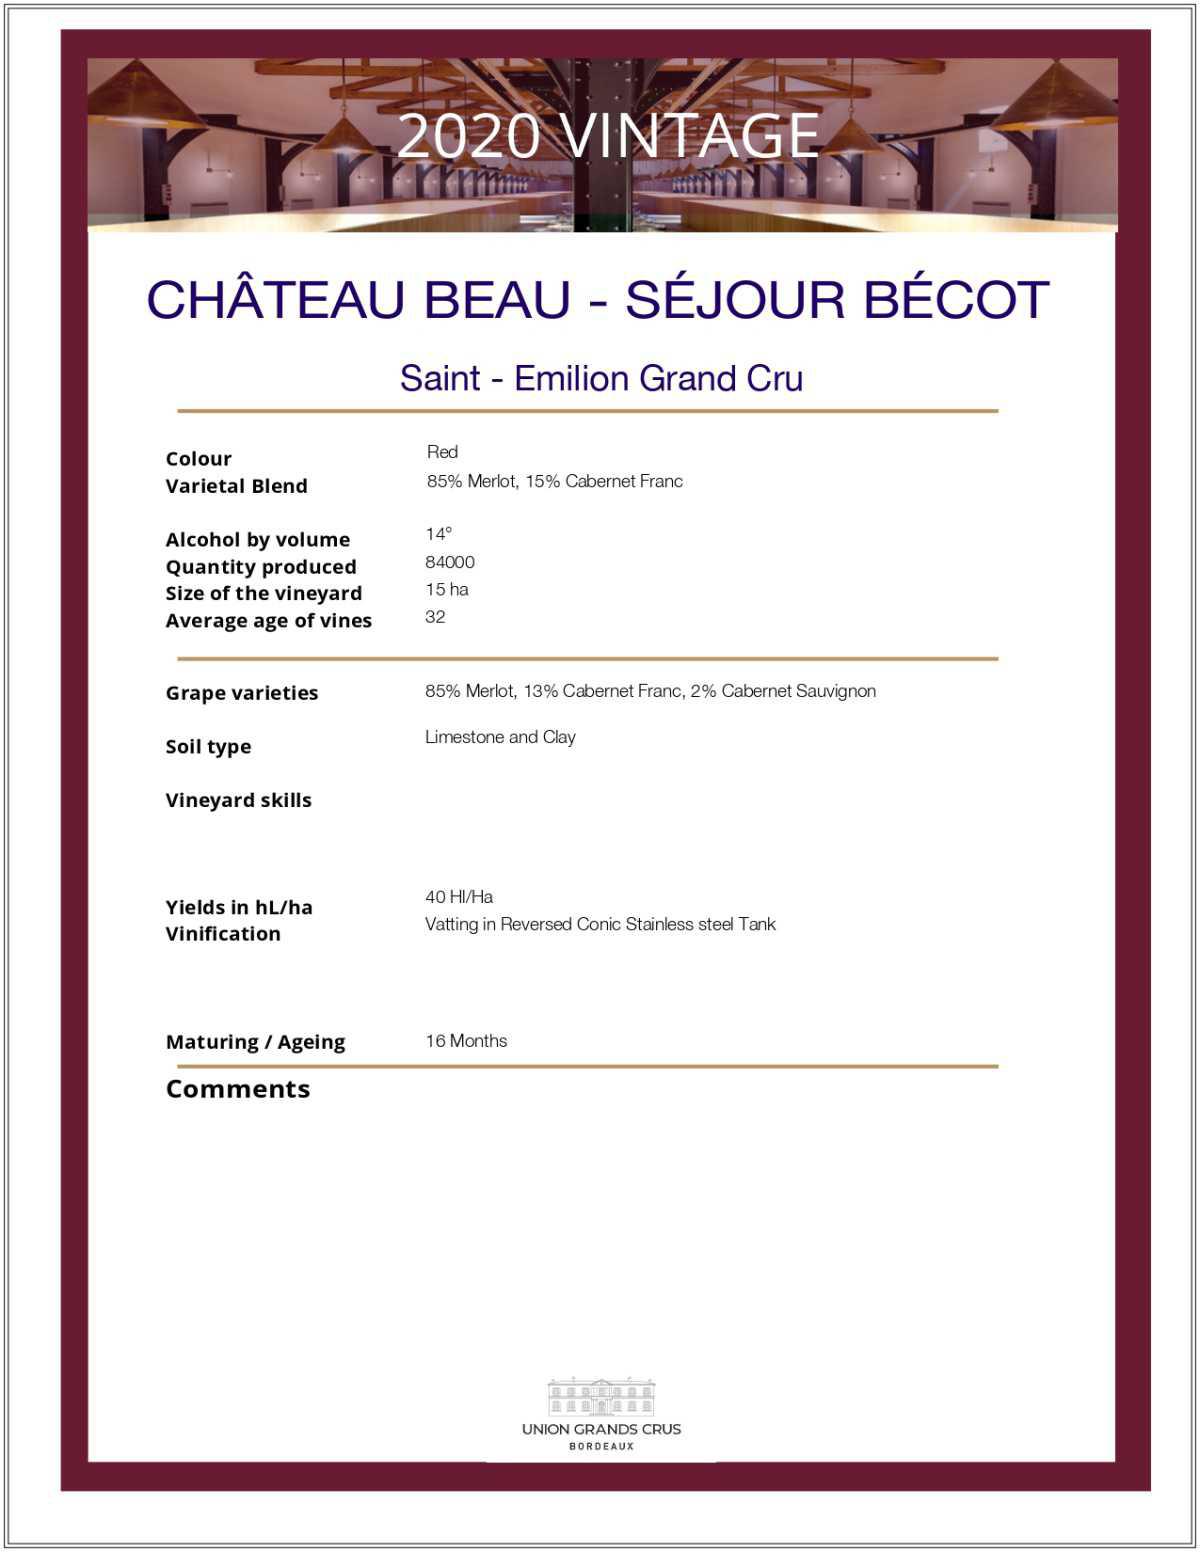 Château Beau - Séjour Bécot